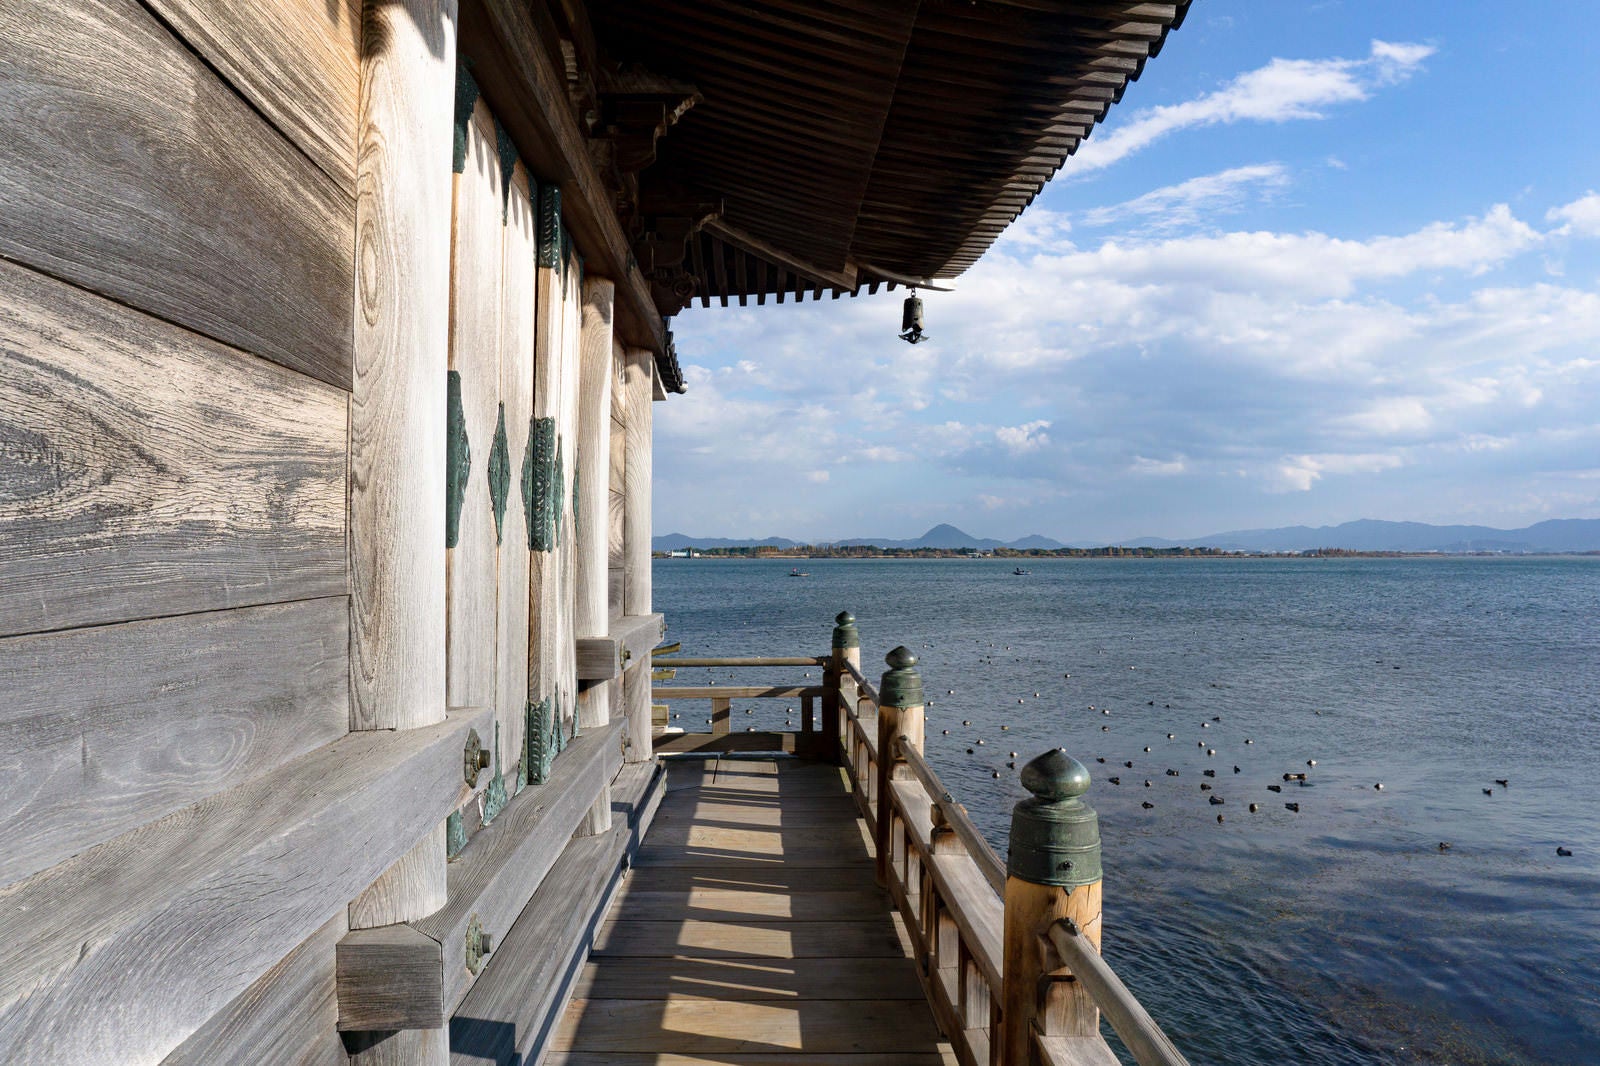 「多くの水鳥が休む琵琶湖の湖面を浮御堂回廊から眺める」の写真